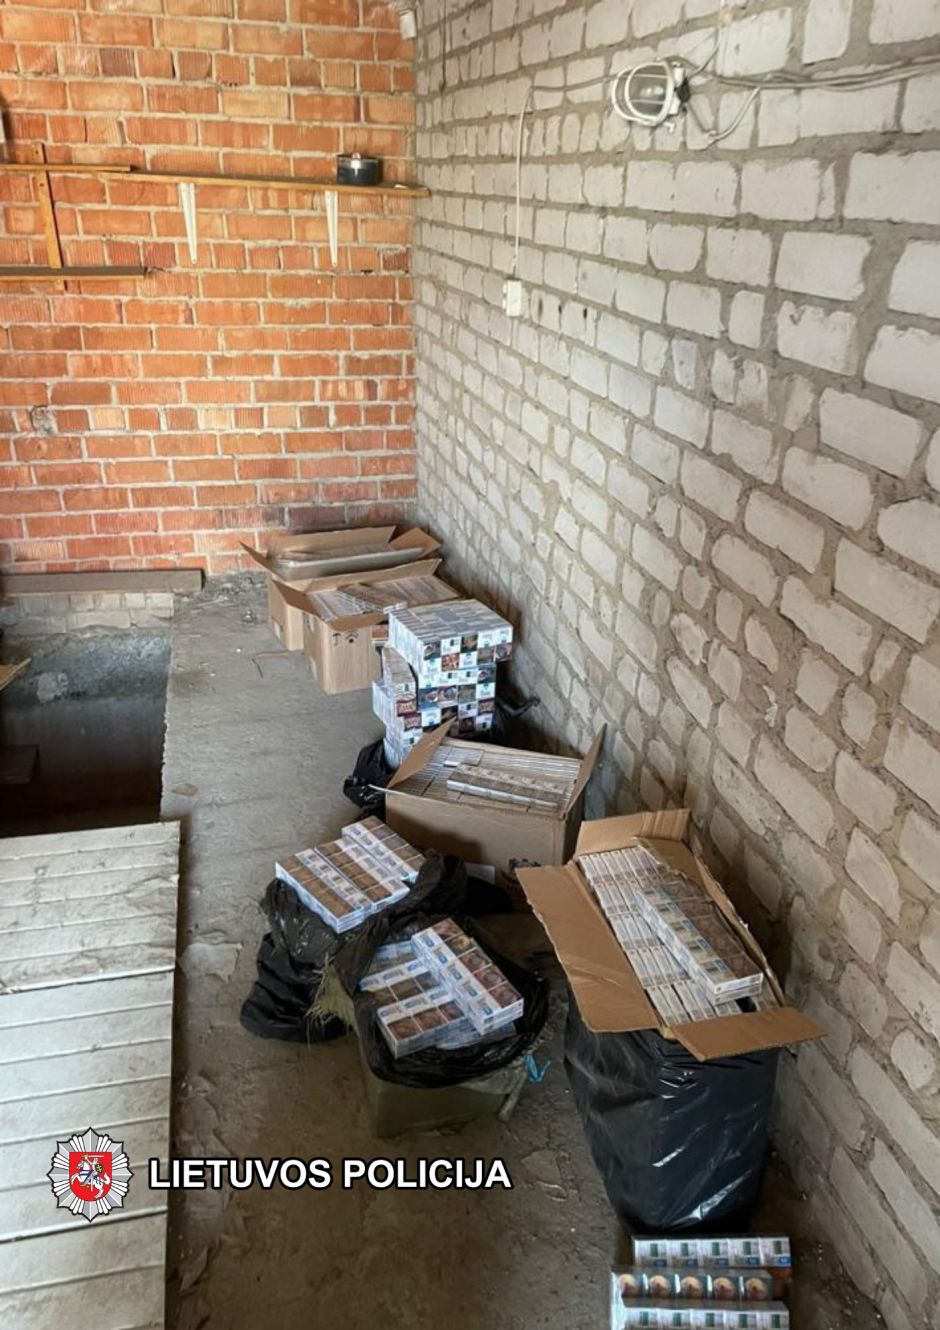 Kauno mieste ir rajone sulaikyta 10 tūkst. kontrabandinių cigarečių pakelių